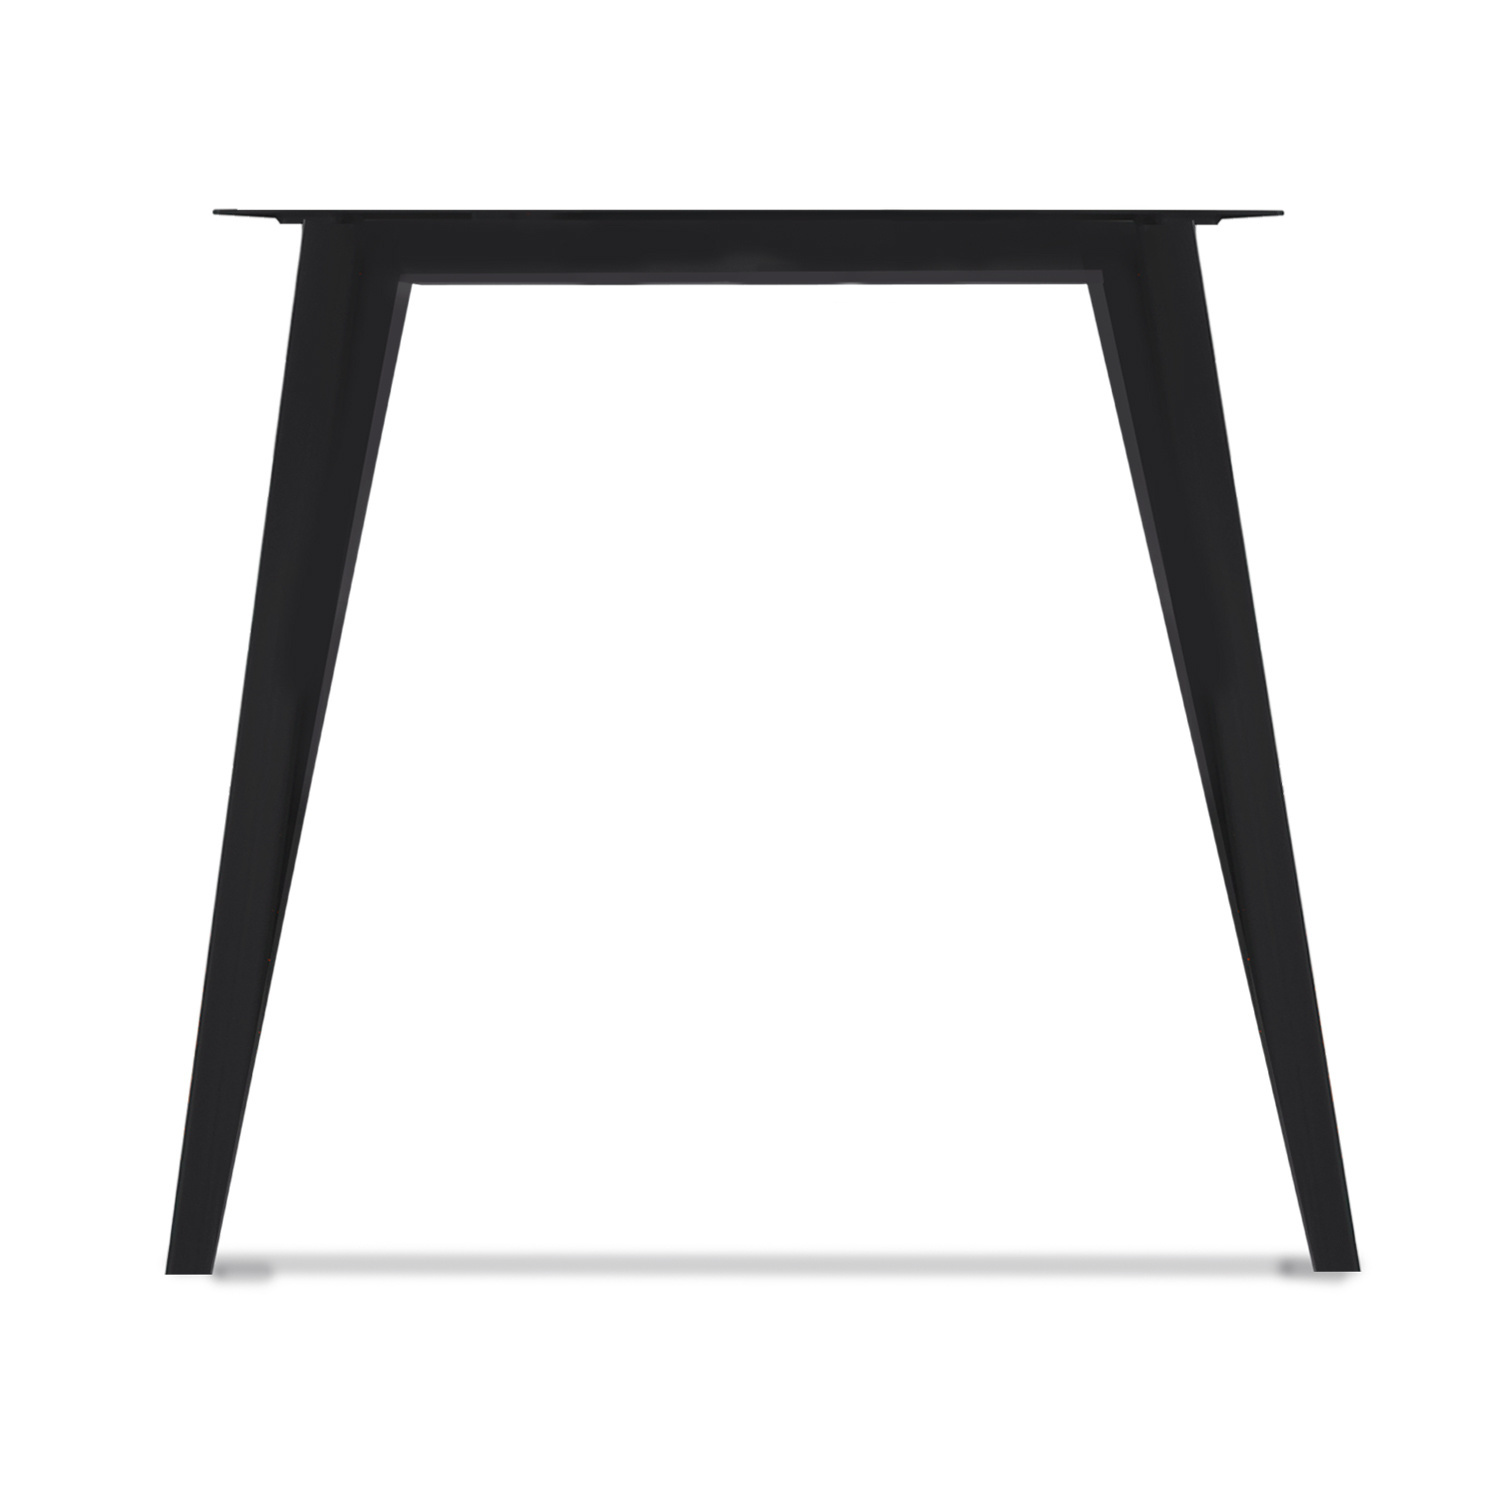  Tischbeine N Metall zierlich SET (2 Stück) -  74 cm breit - 72 cm hoch - N-form Tischkufen / Tischgestell beschichtet - Schwarz